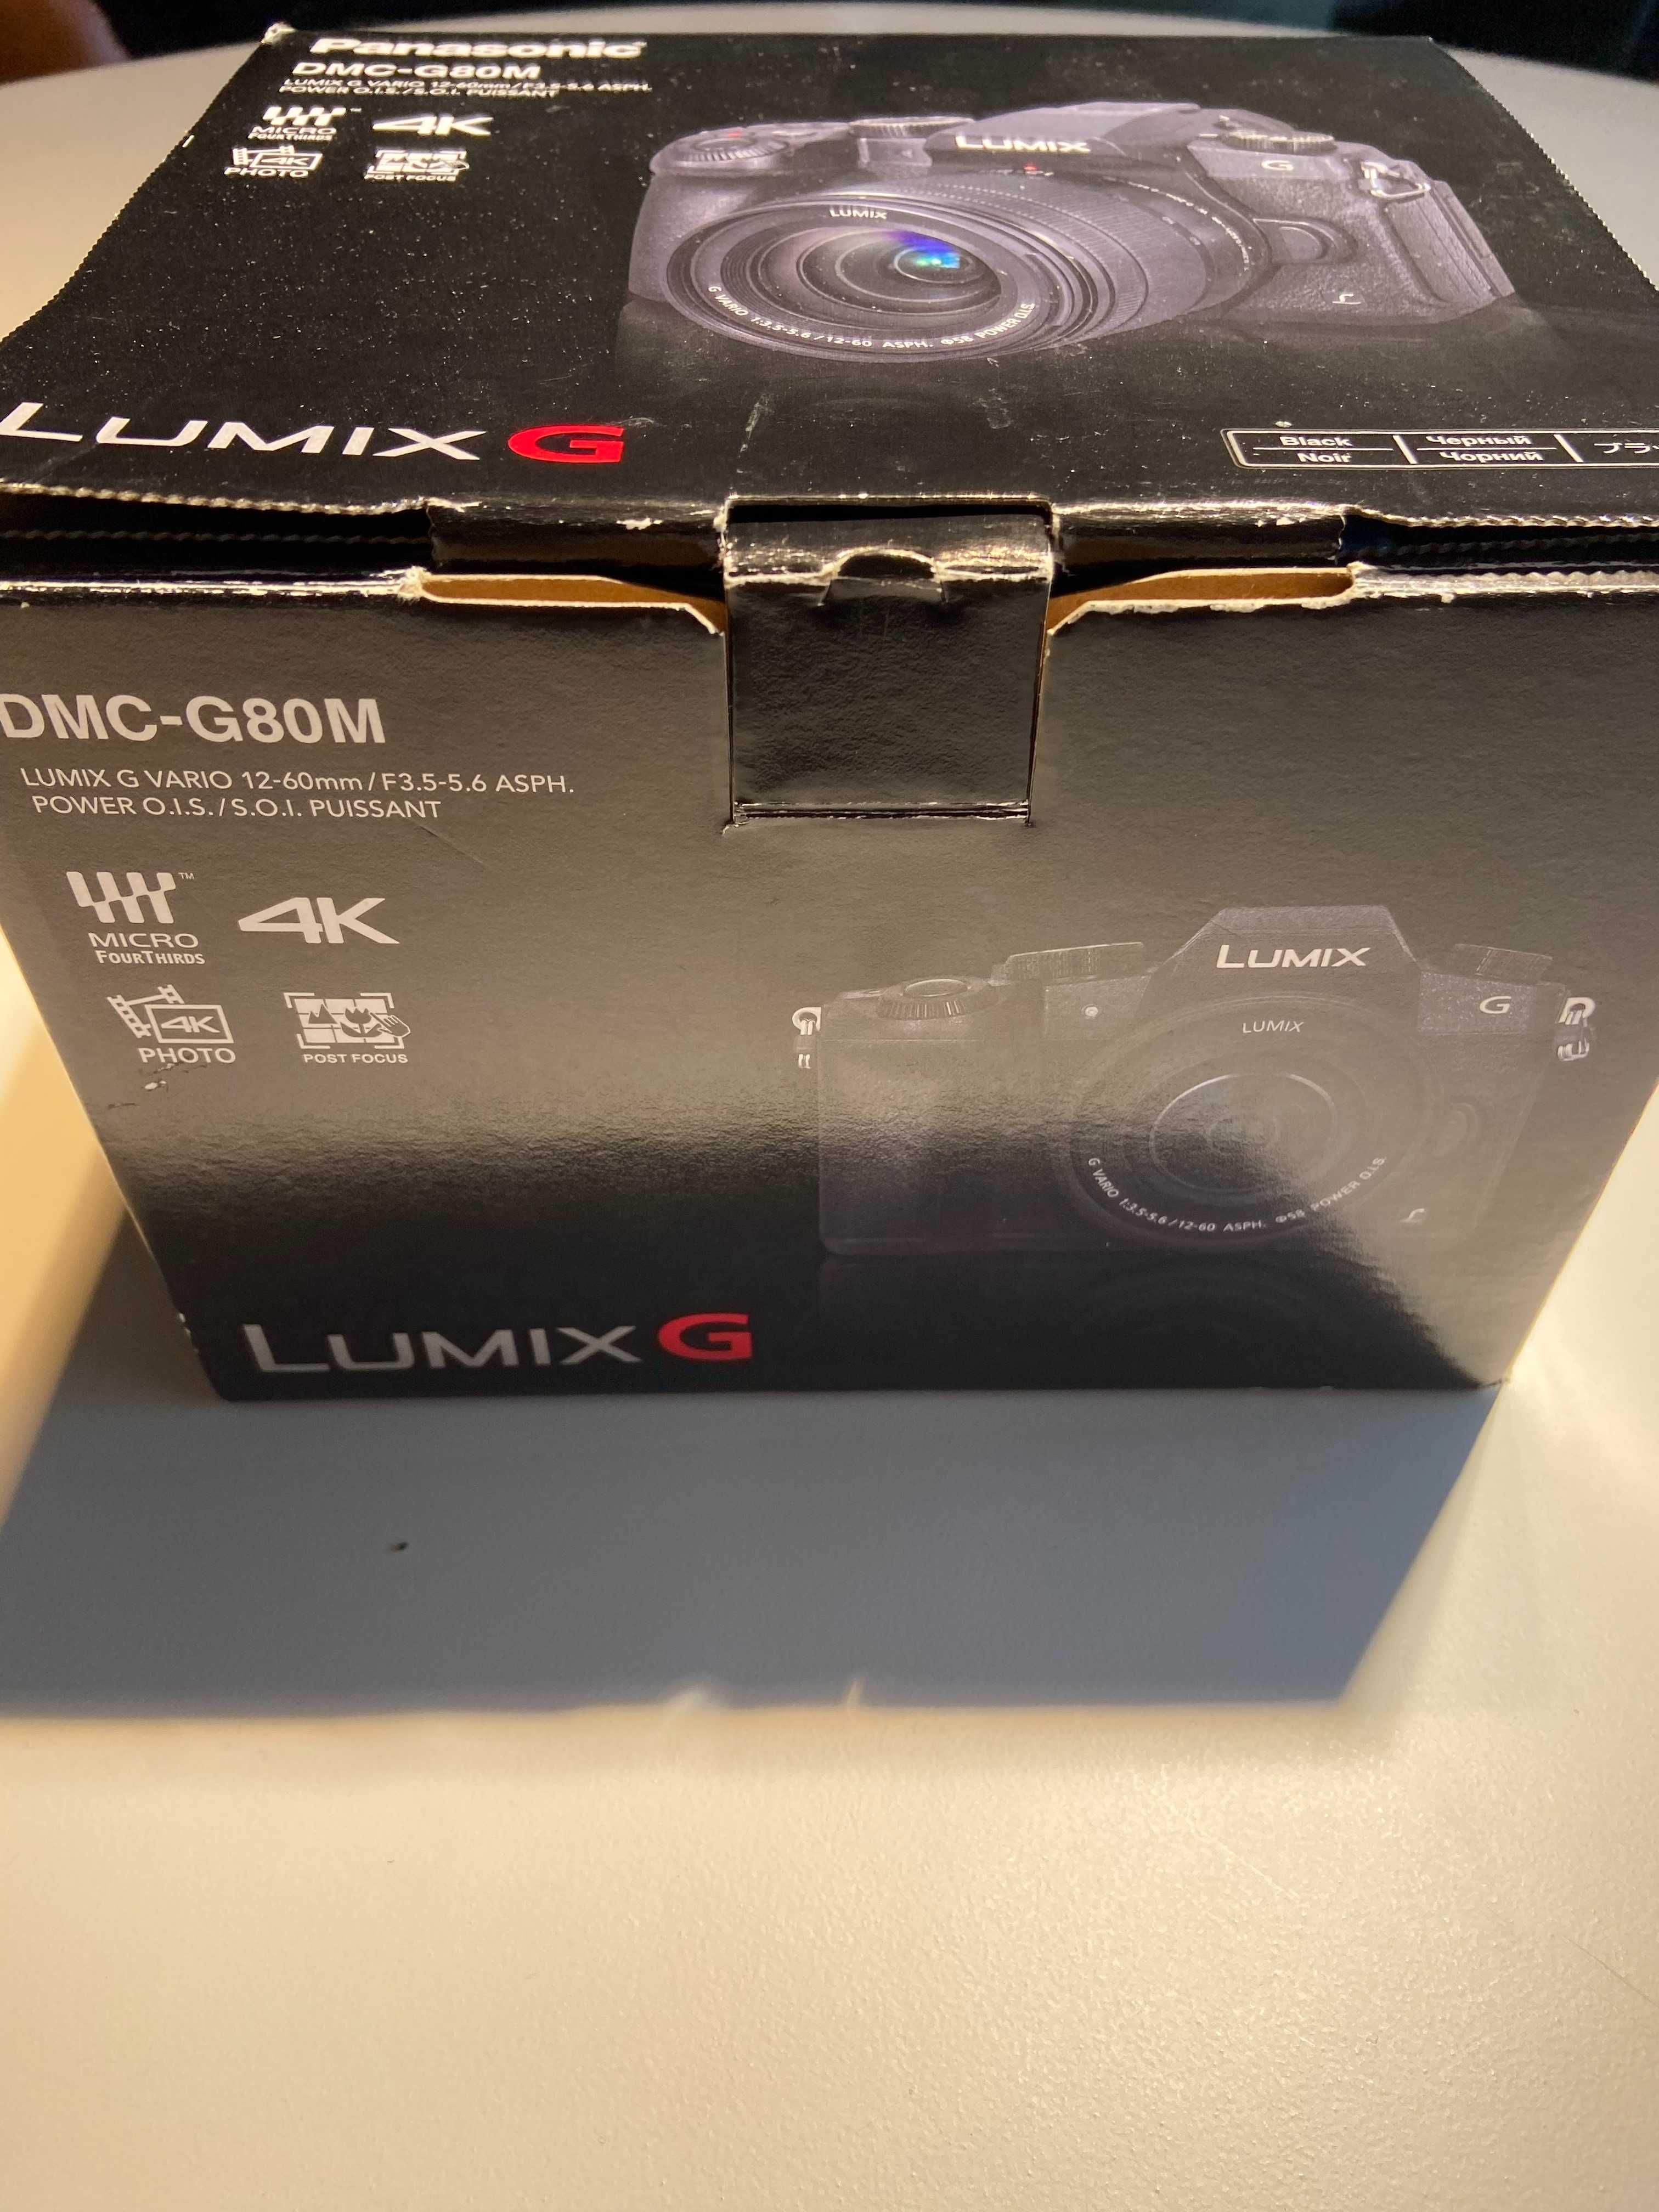 Aparat  Panasonic LUMIX DMC-G80M z obiektywem